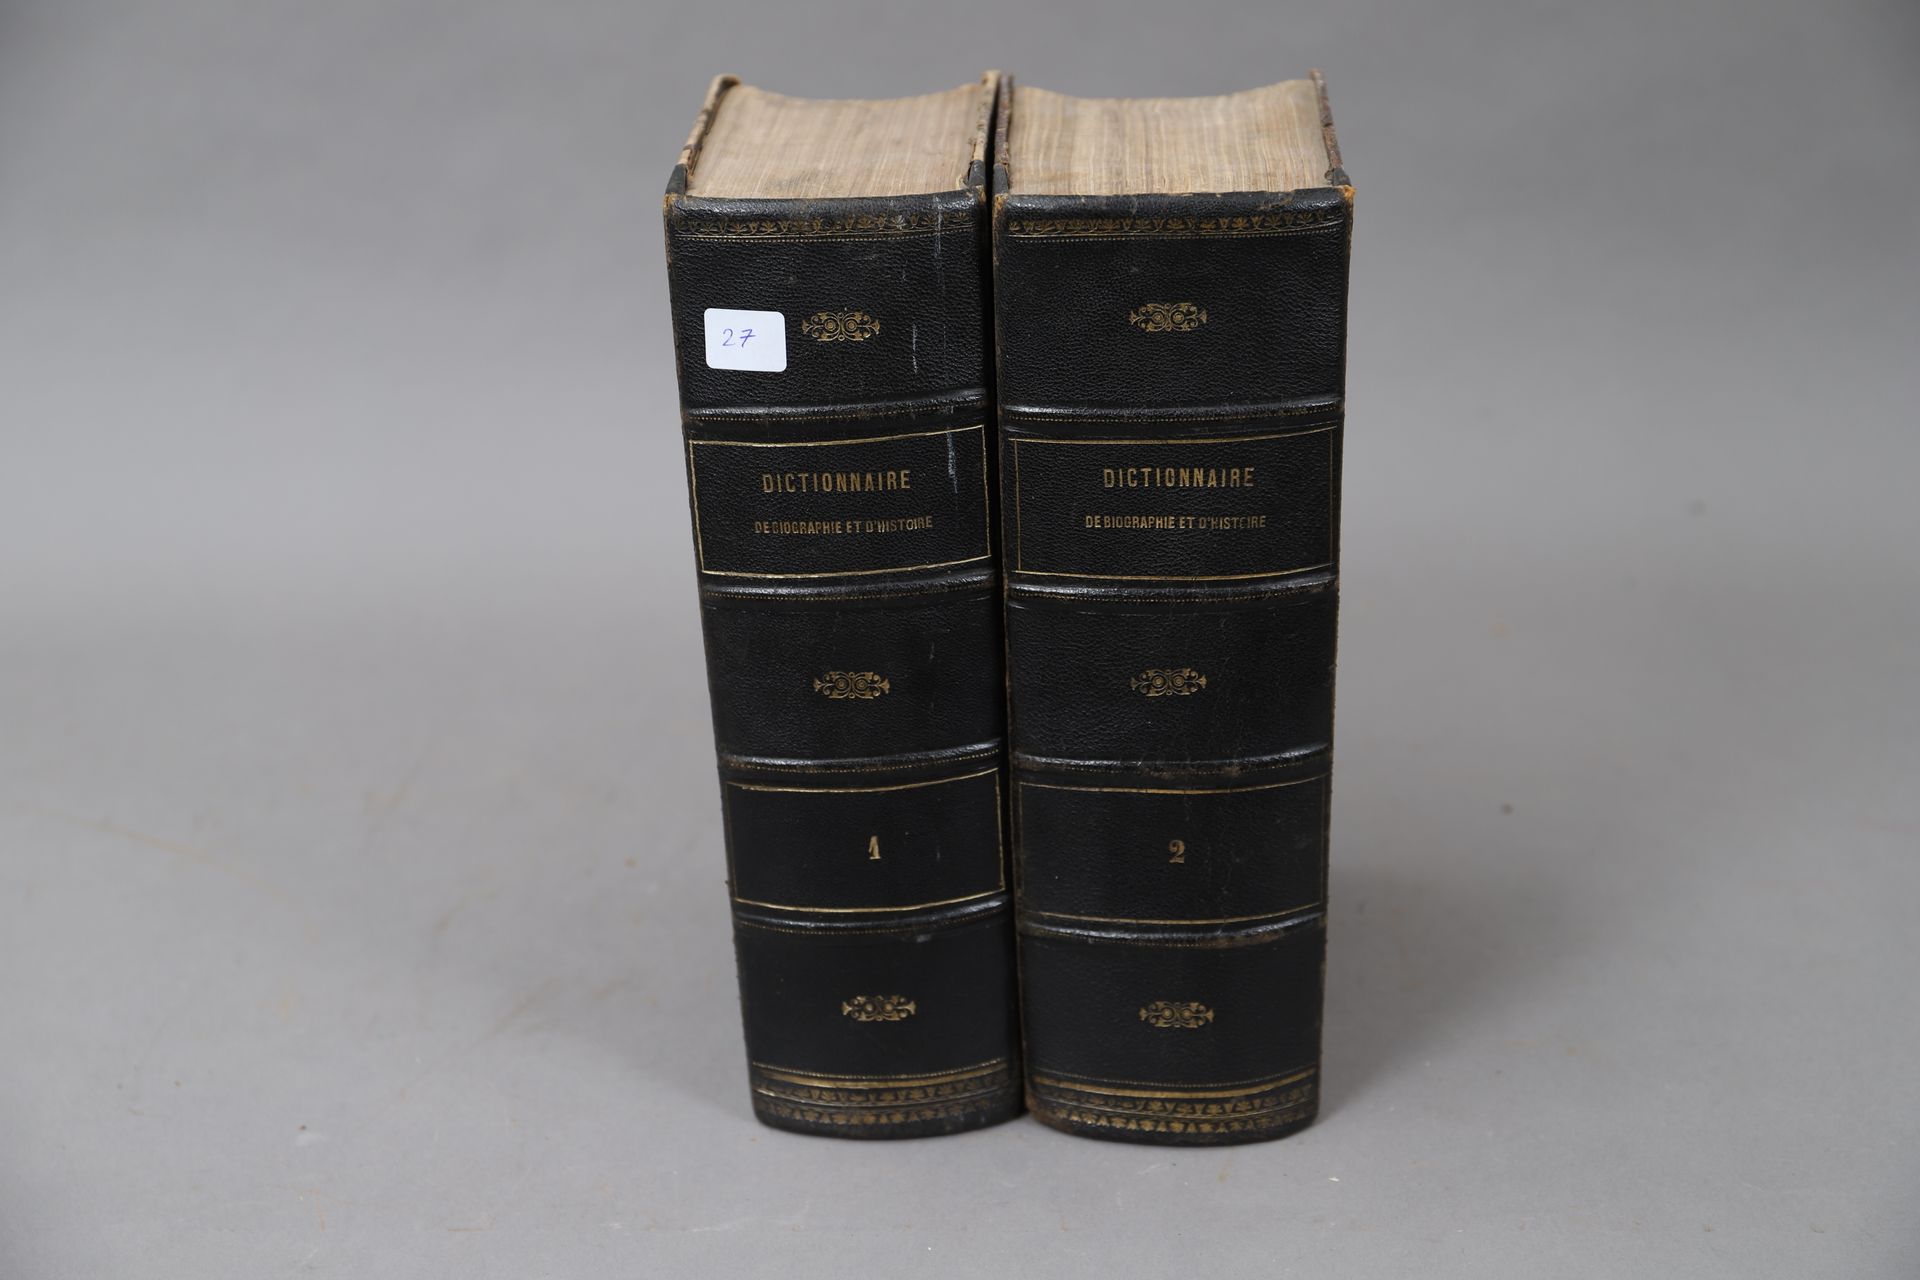 Null GESCHICHTSLEXIKON. 

1873

2 Bände, gebunden.